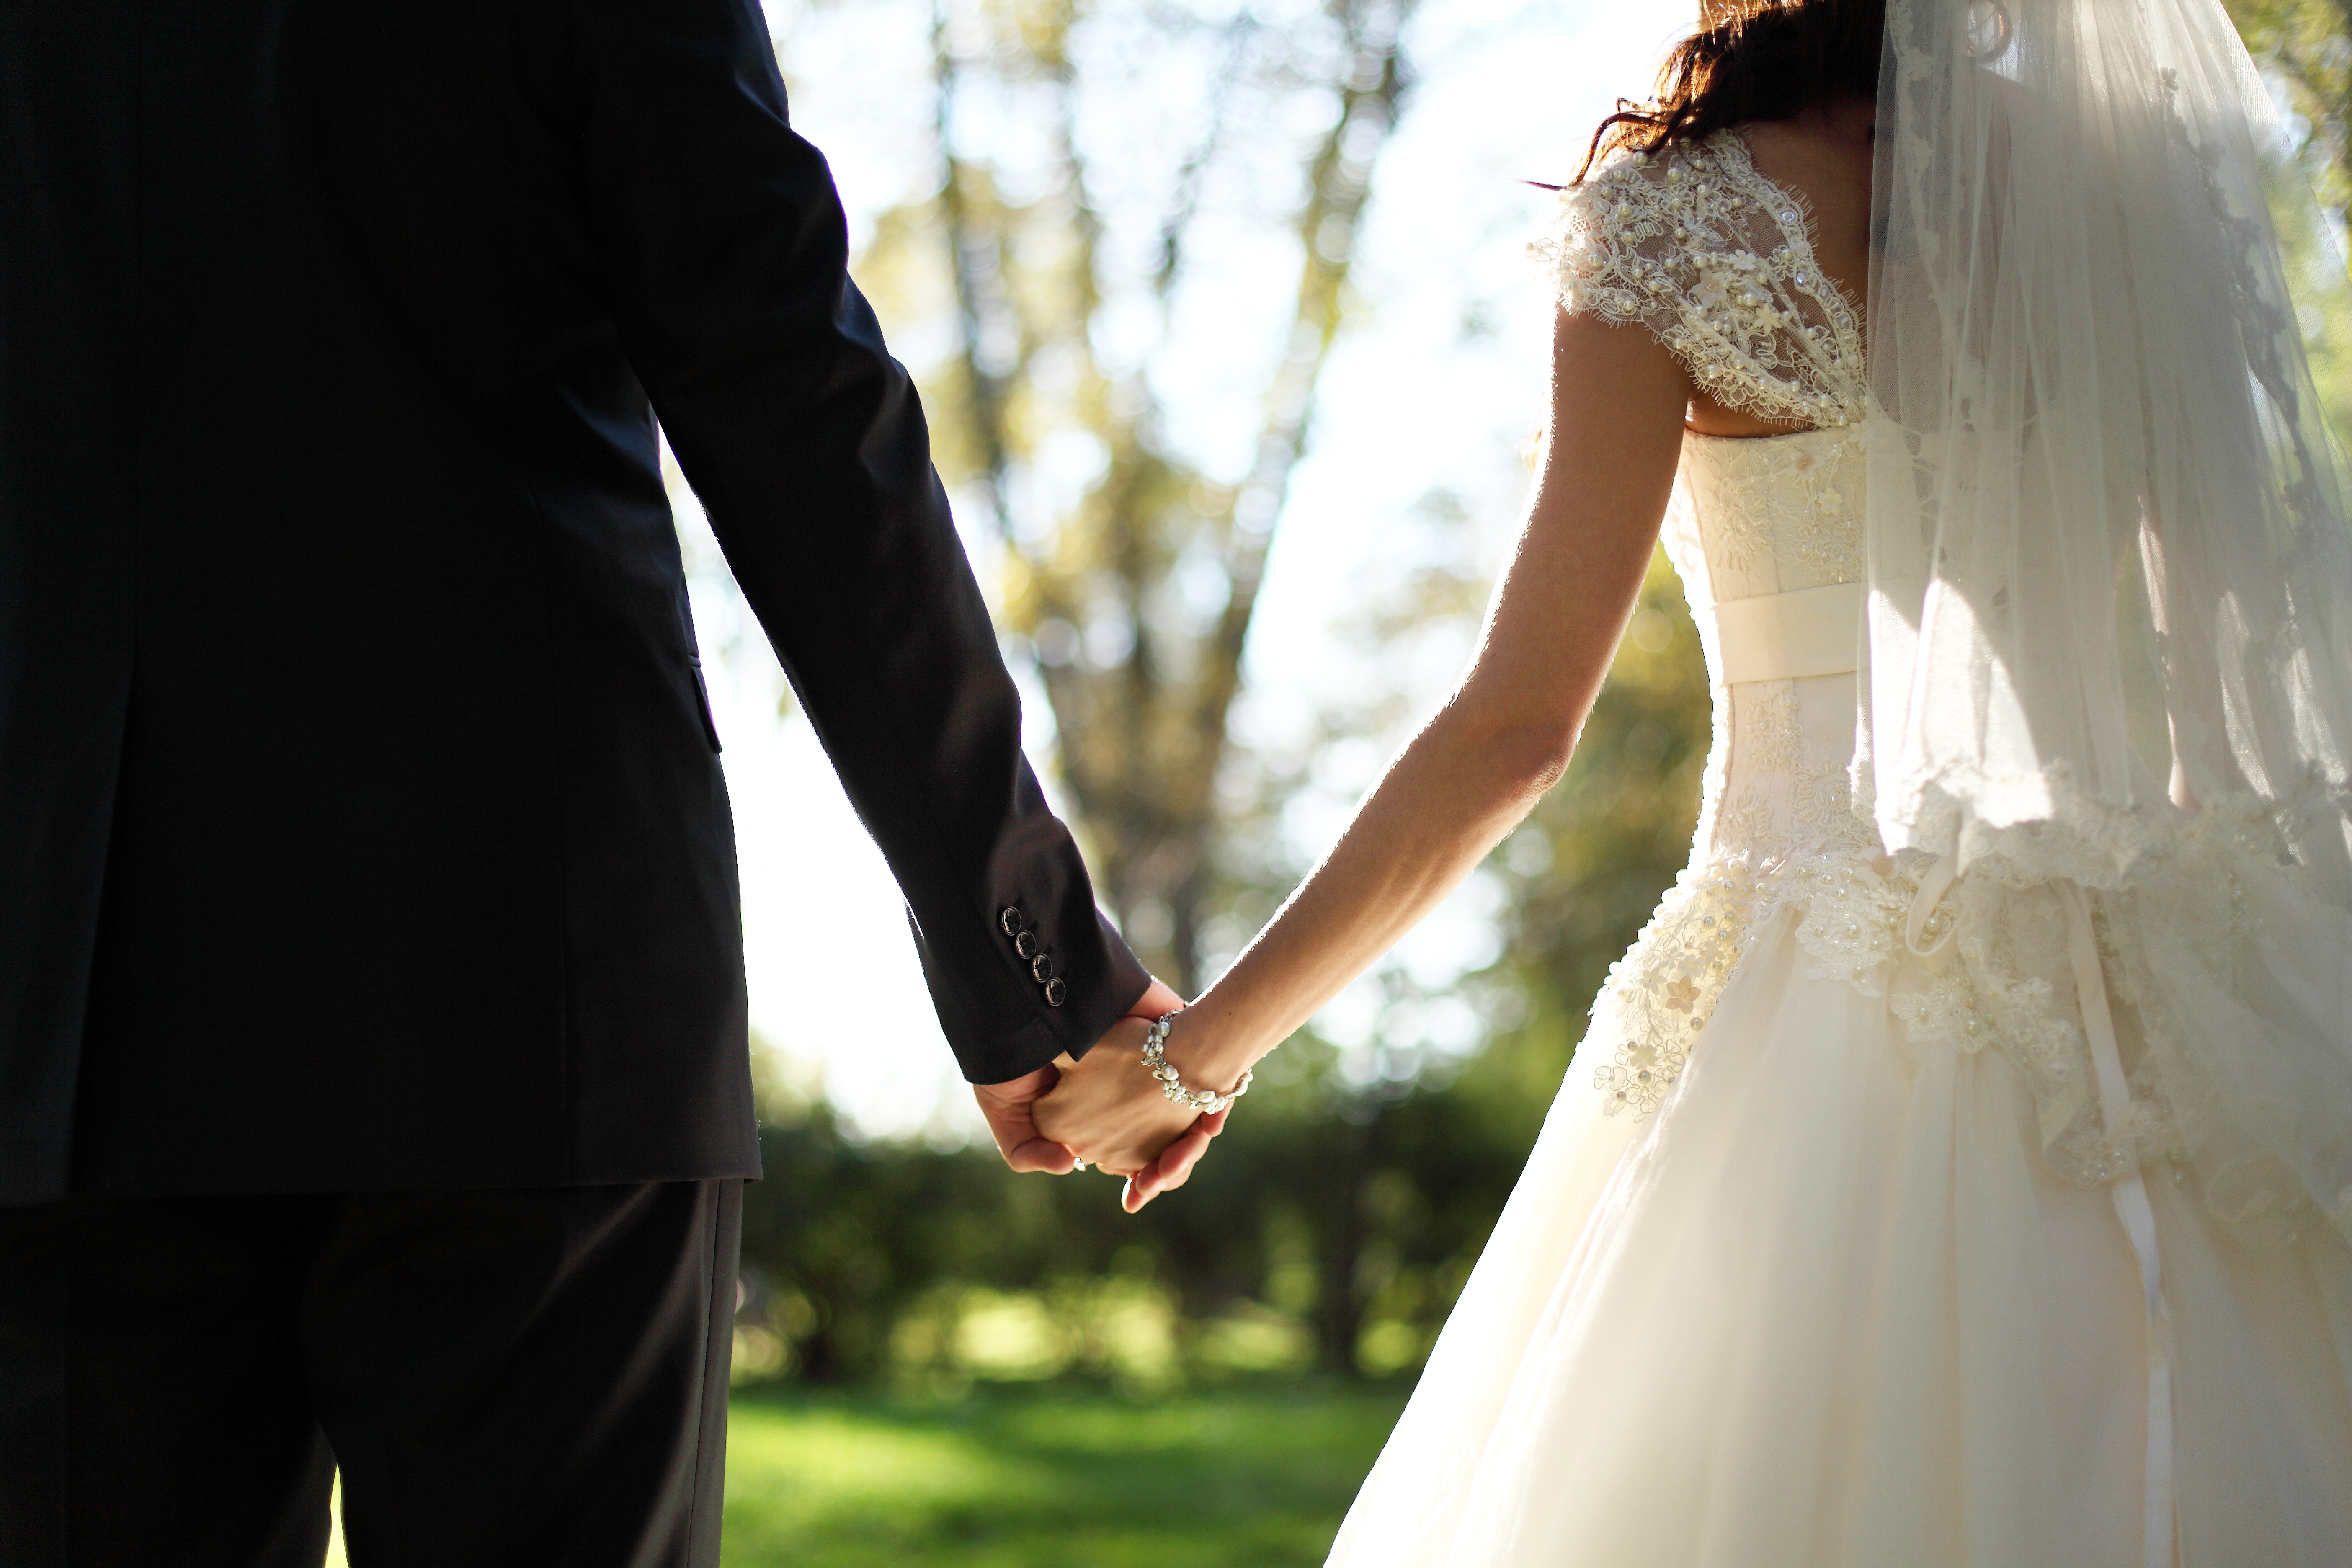 Braut und Bräutigam halten sich an ihrem großen Tag an den Hände. | Quelle: Shutterstock